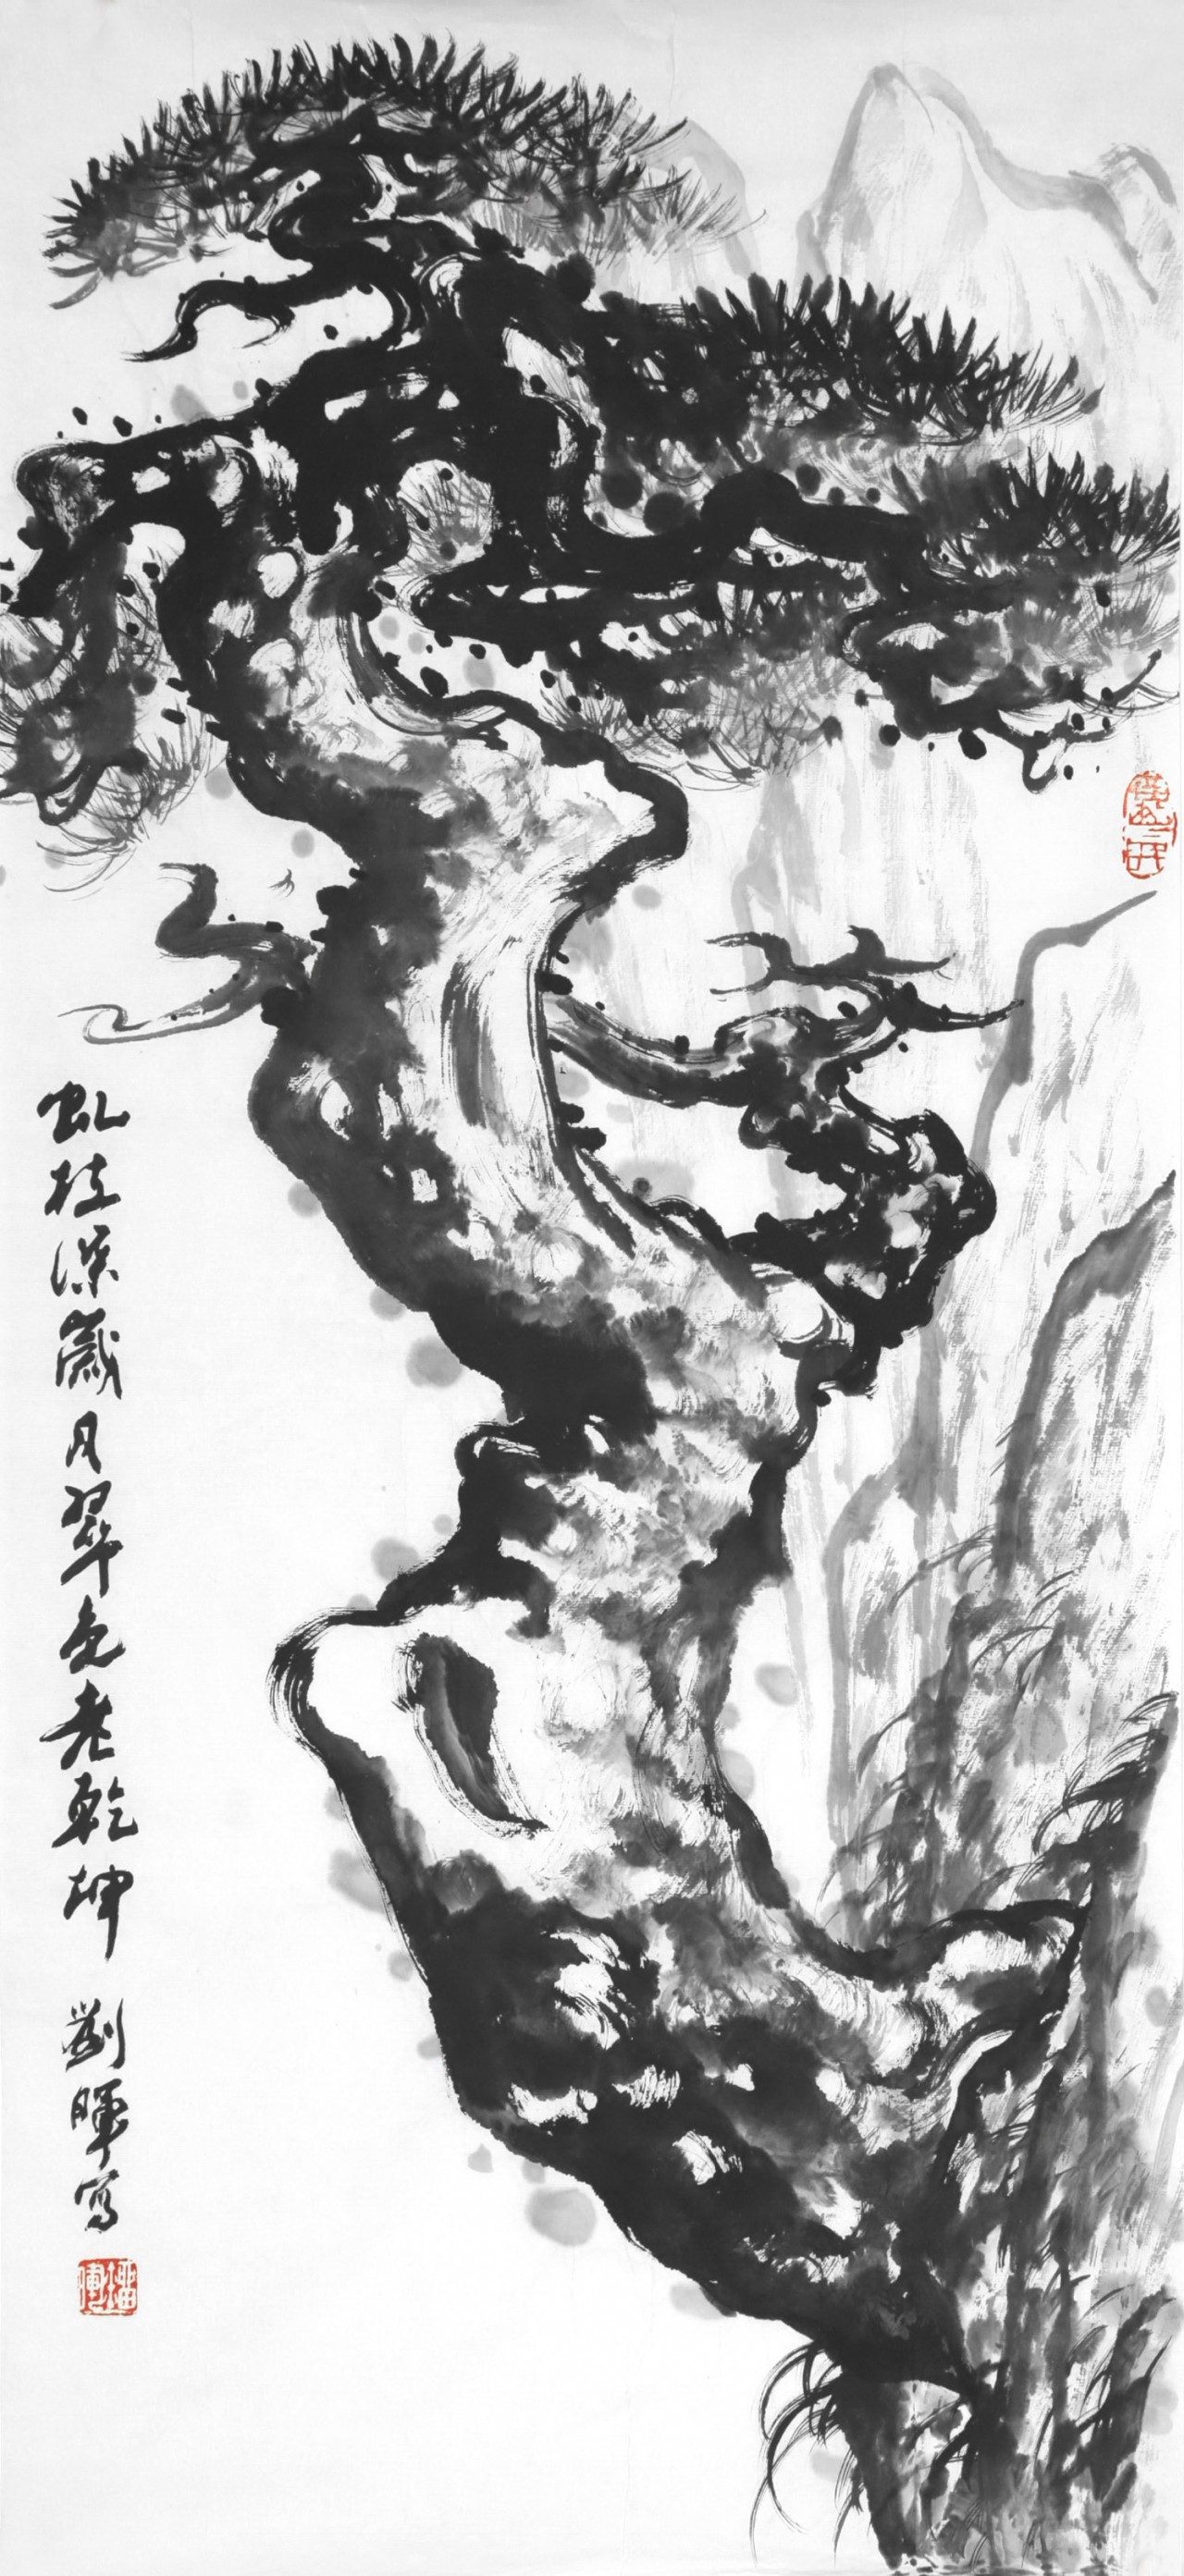 【墨松-刘晖山水国画-纸本(2005年作)】刘晖松柏作品